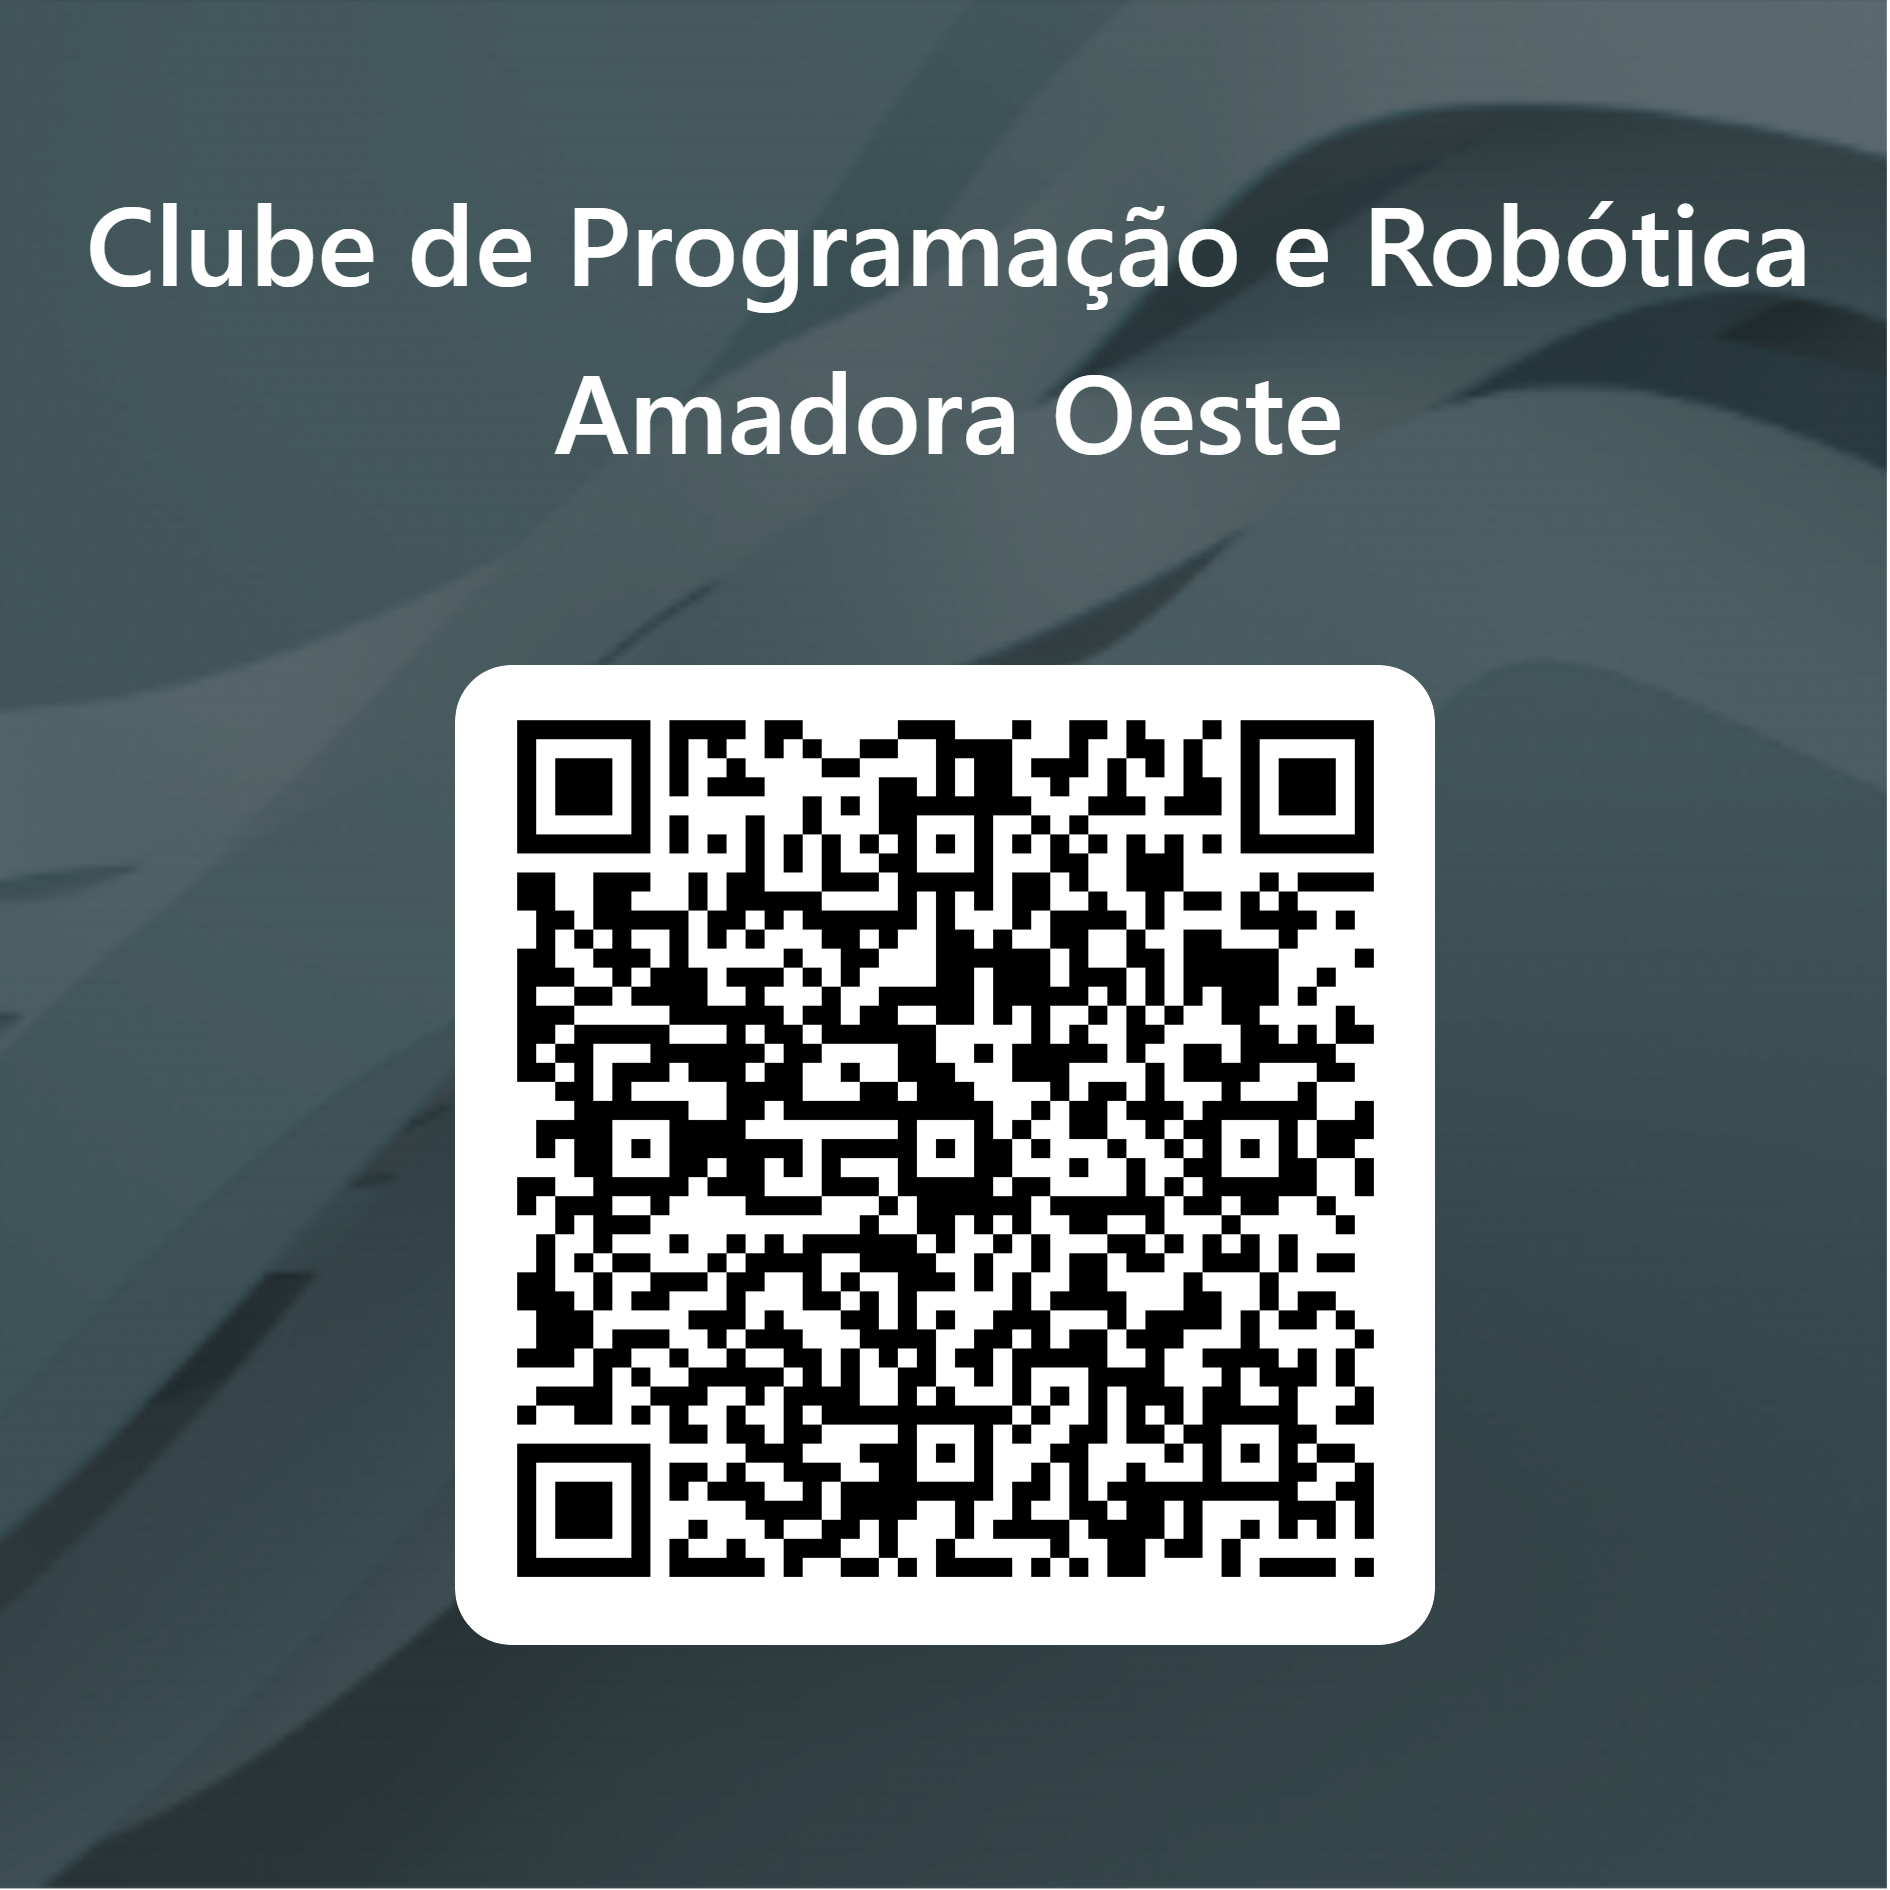 QRCode para inscrição Clube de Programação e Robótica Amadora Oeste 23 24